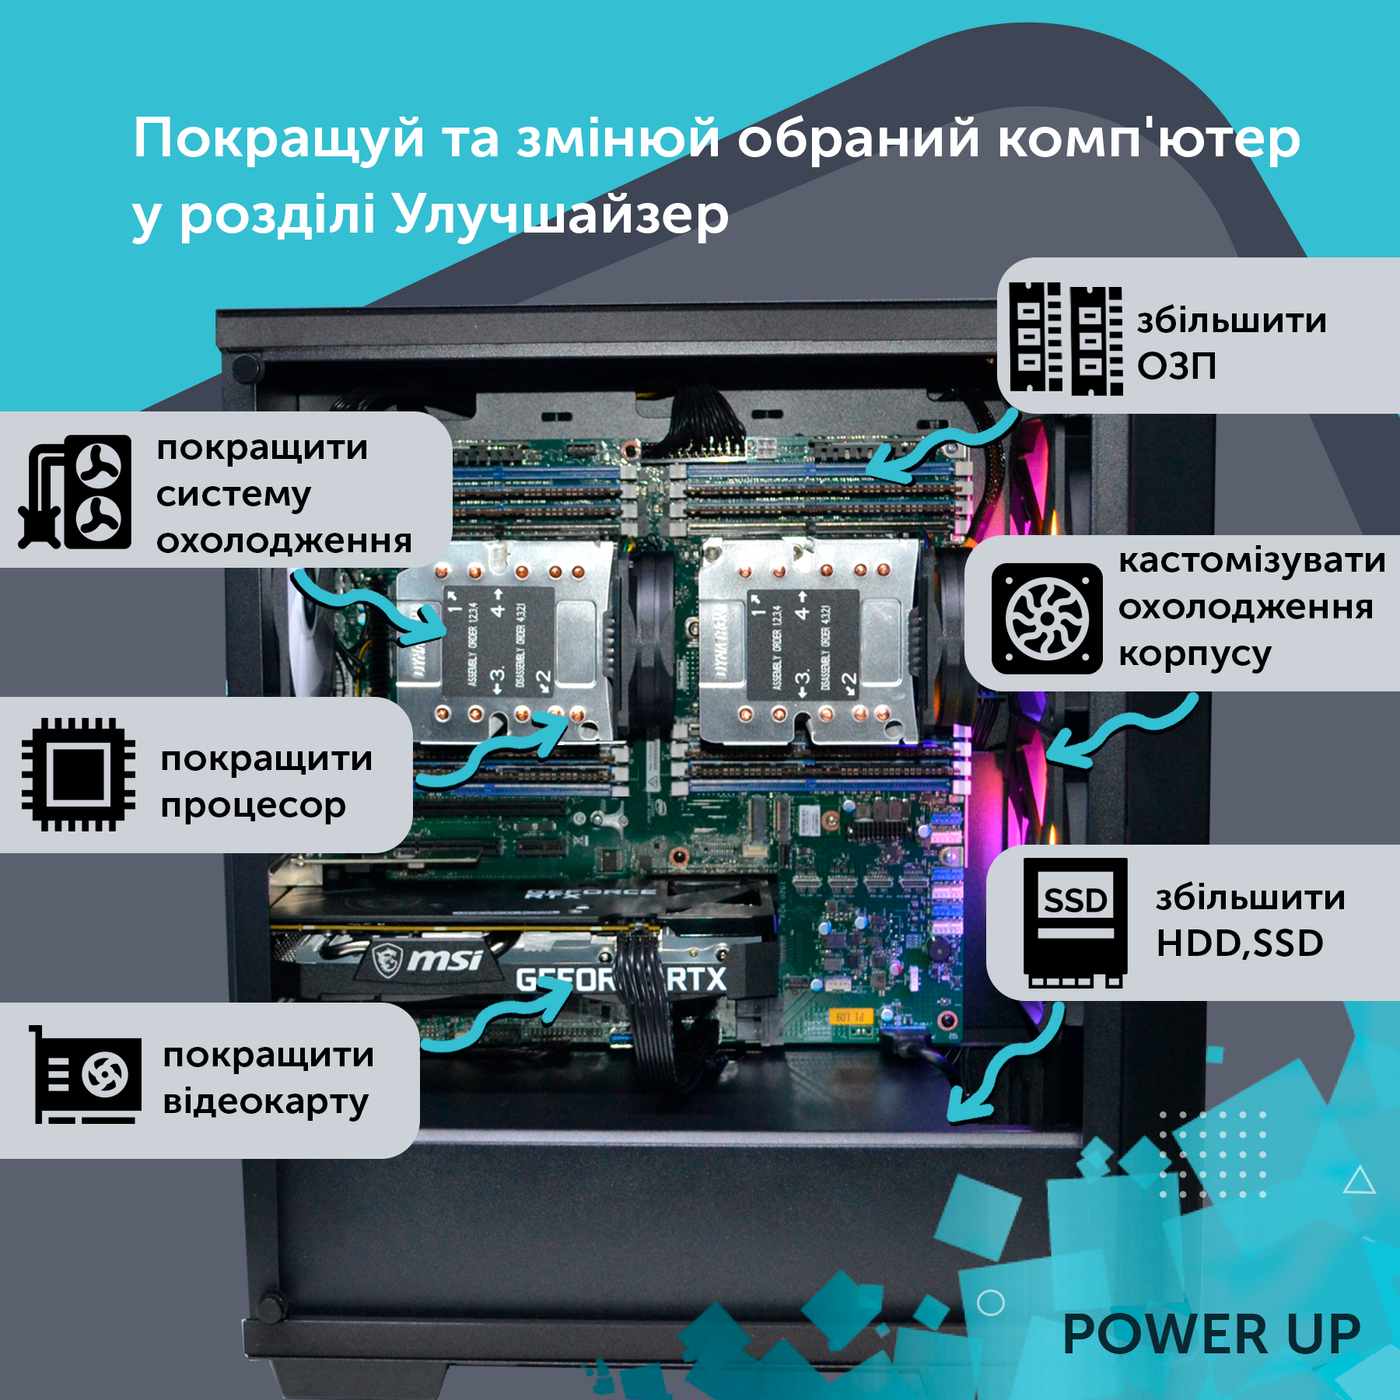 Робоча станція PowerUp Desktop #287 Core i9 13900K/64 GB/SSD 1TB/GeForce RTX 4060Ti 16GB